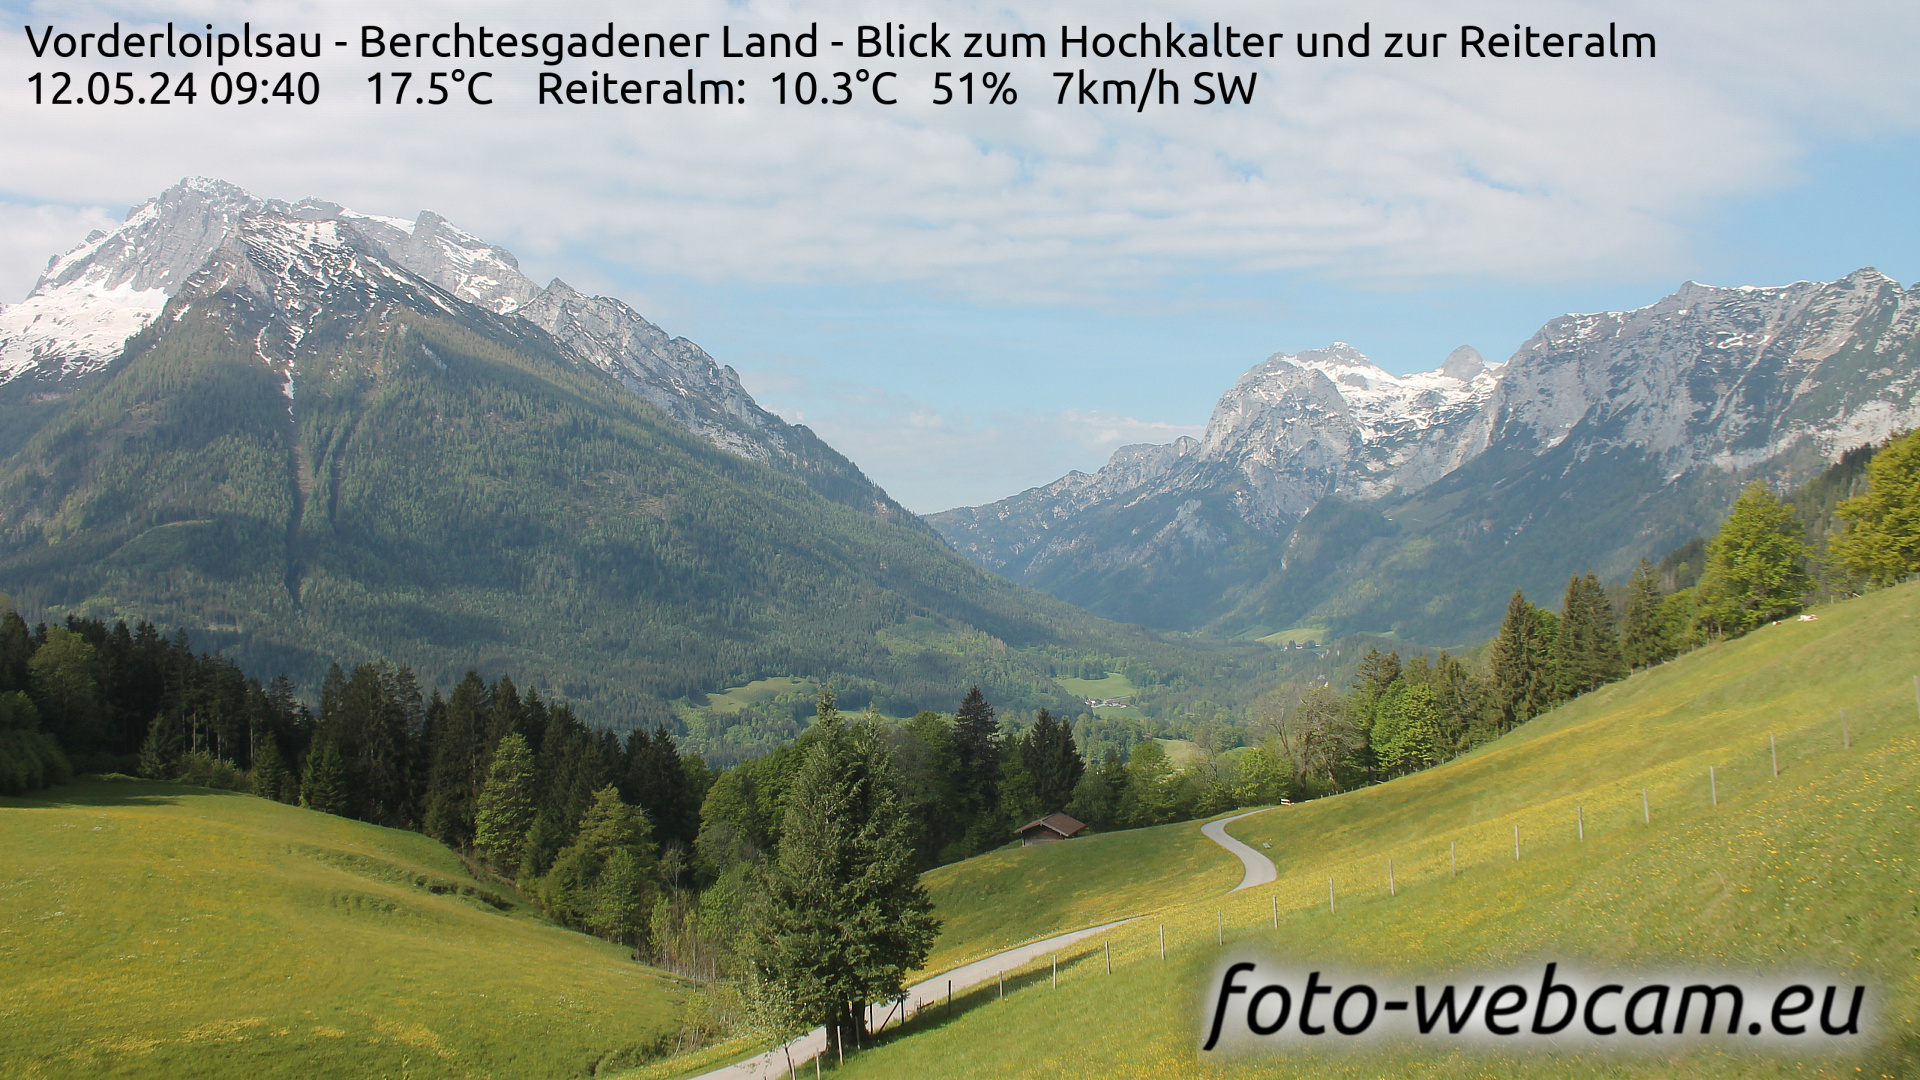 Ramsau bei Berchtesgaden Je. 09:48